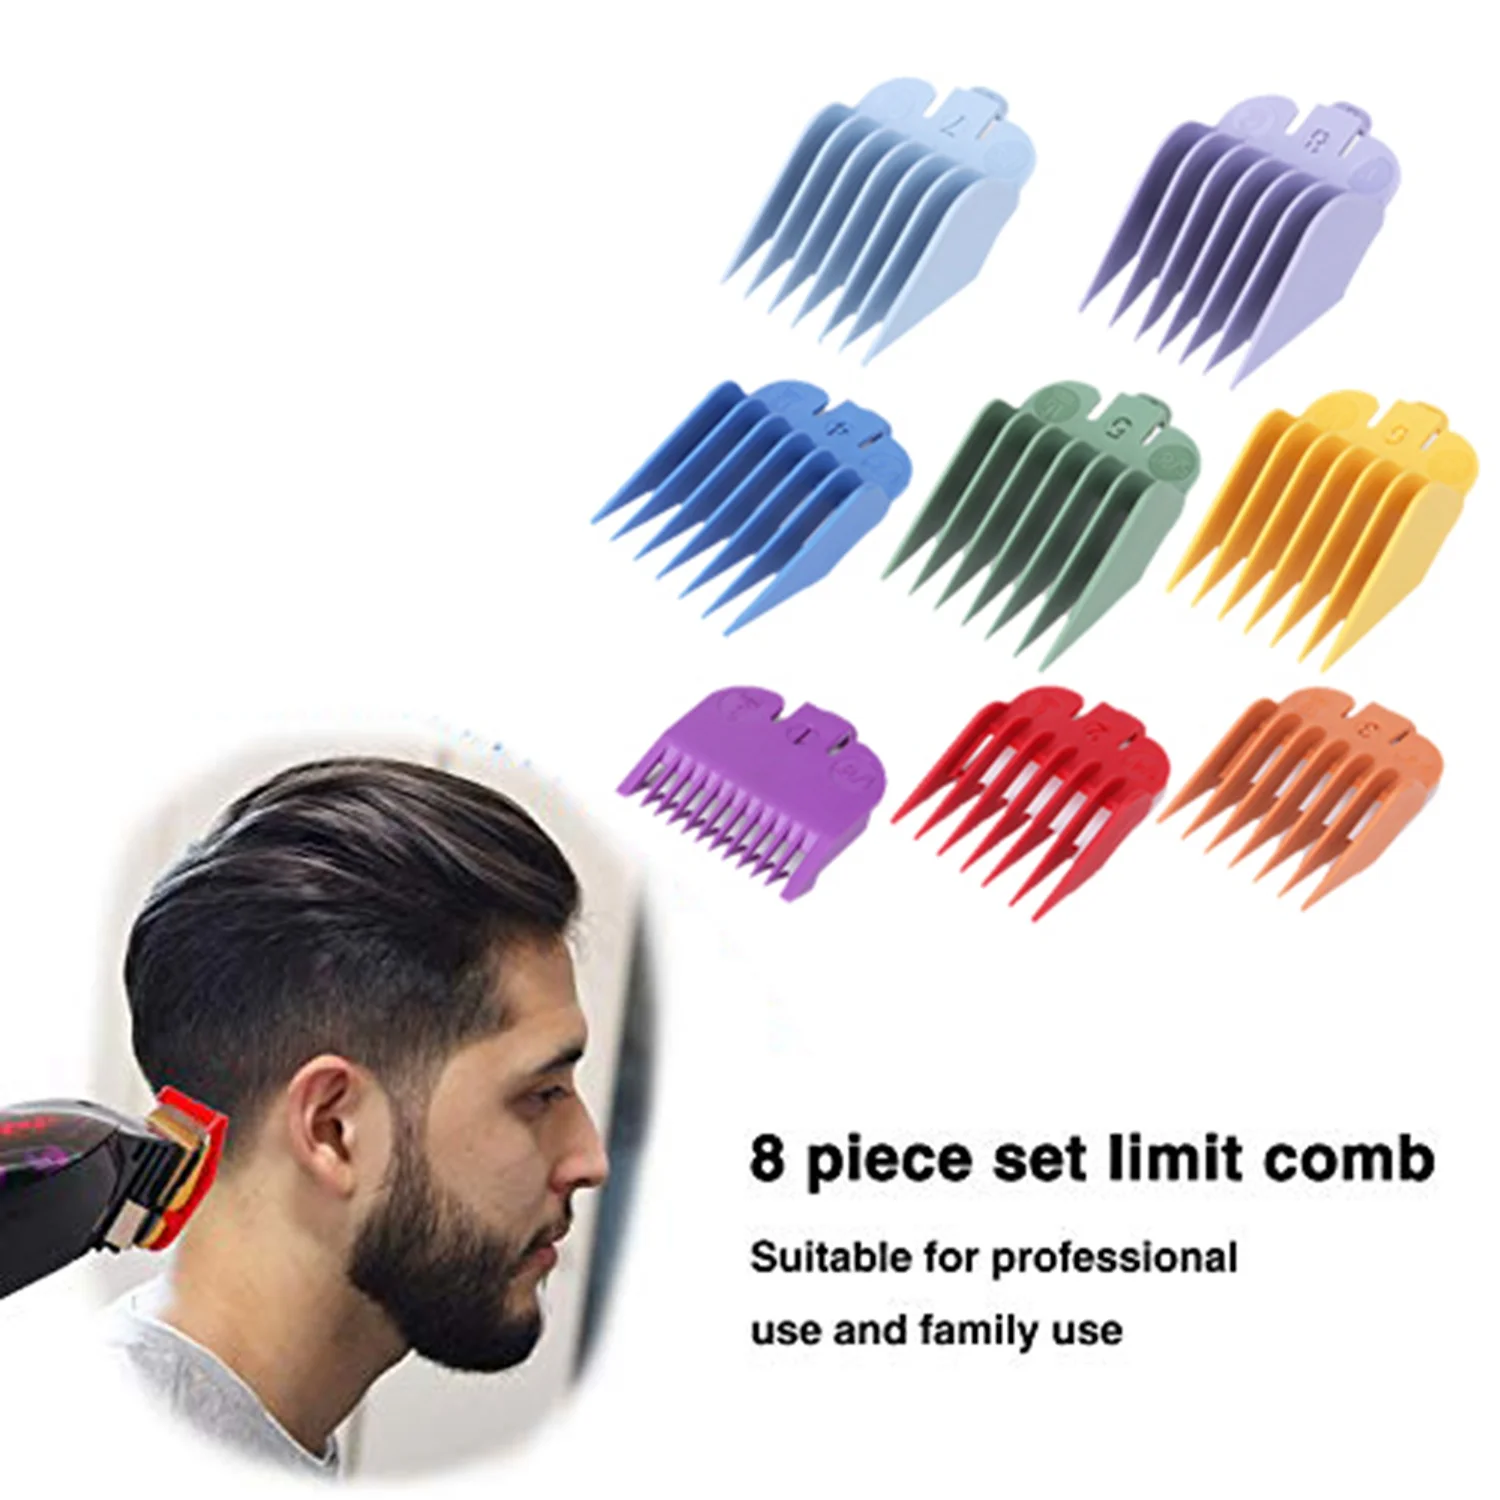 

Профессиональная сменная насадка для машинки для стрижки волос, направляющая расческа 8 цветов и размеров, подходит для триммеров Wahl